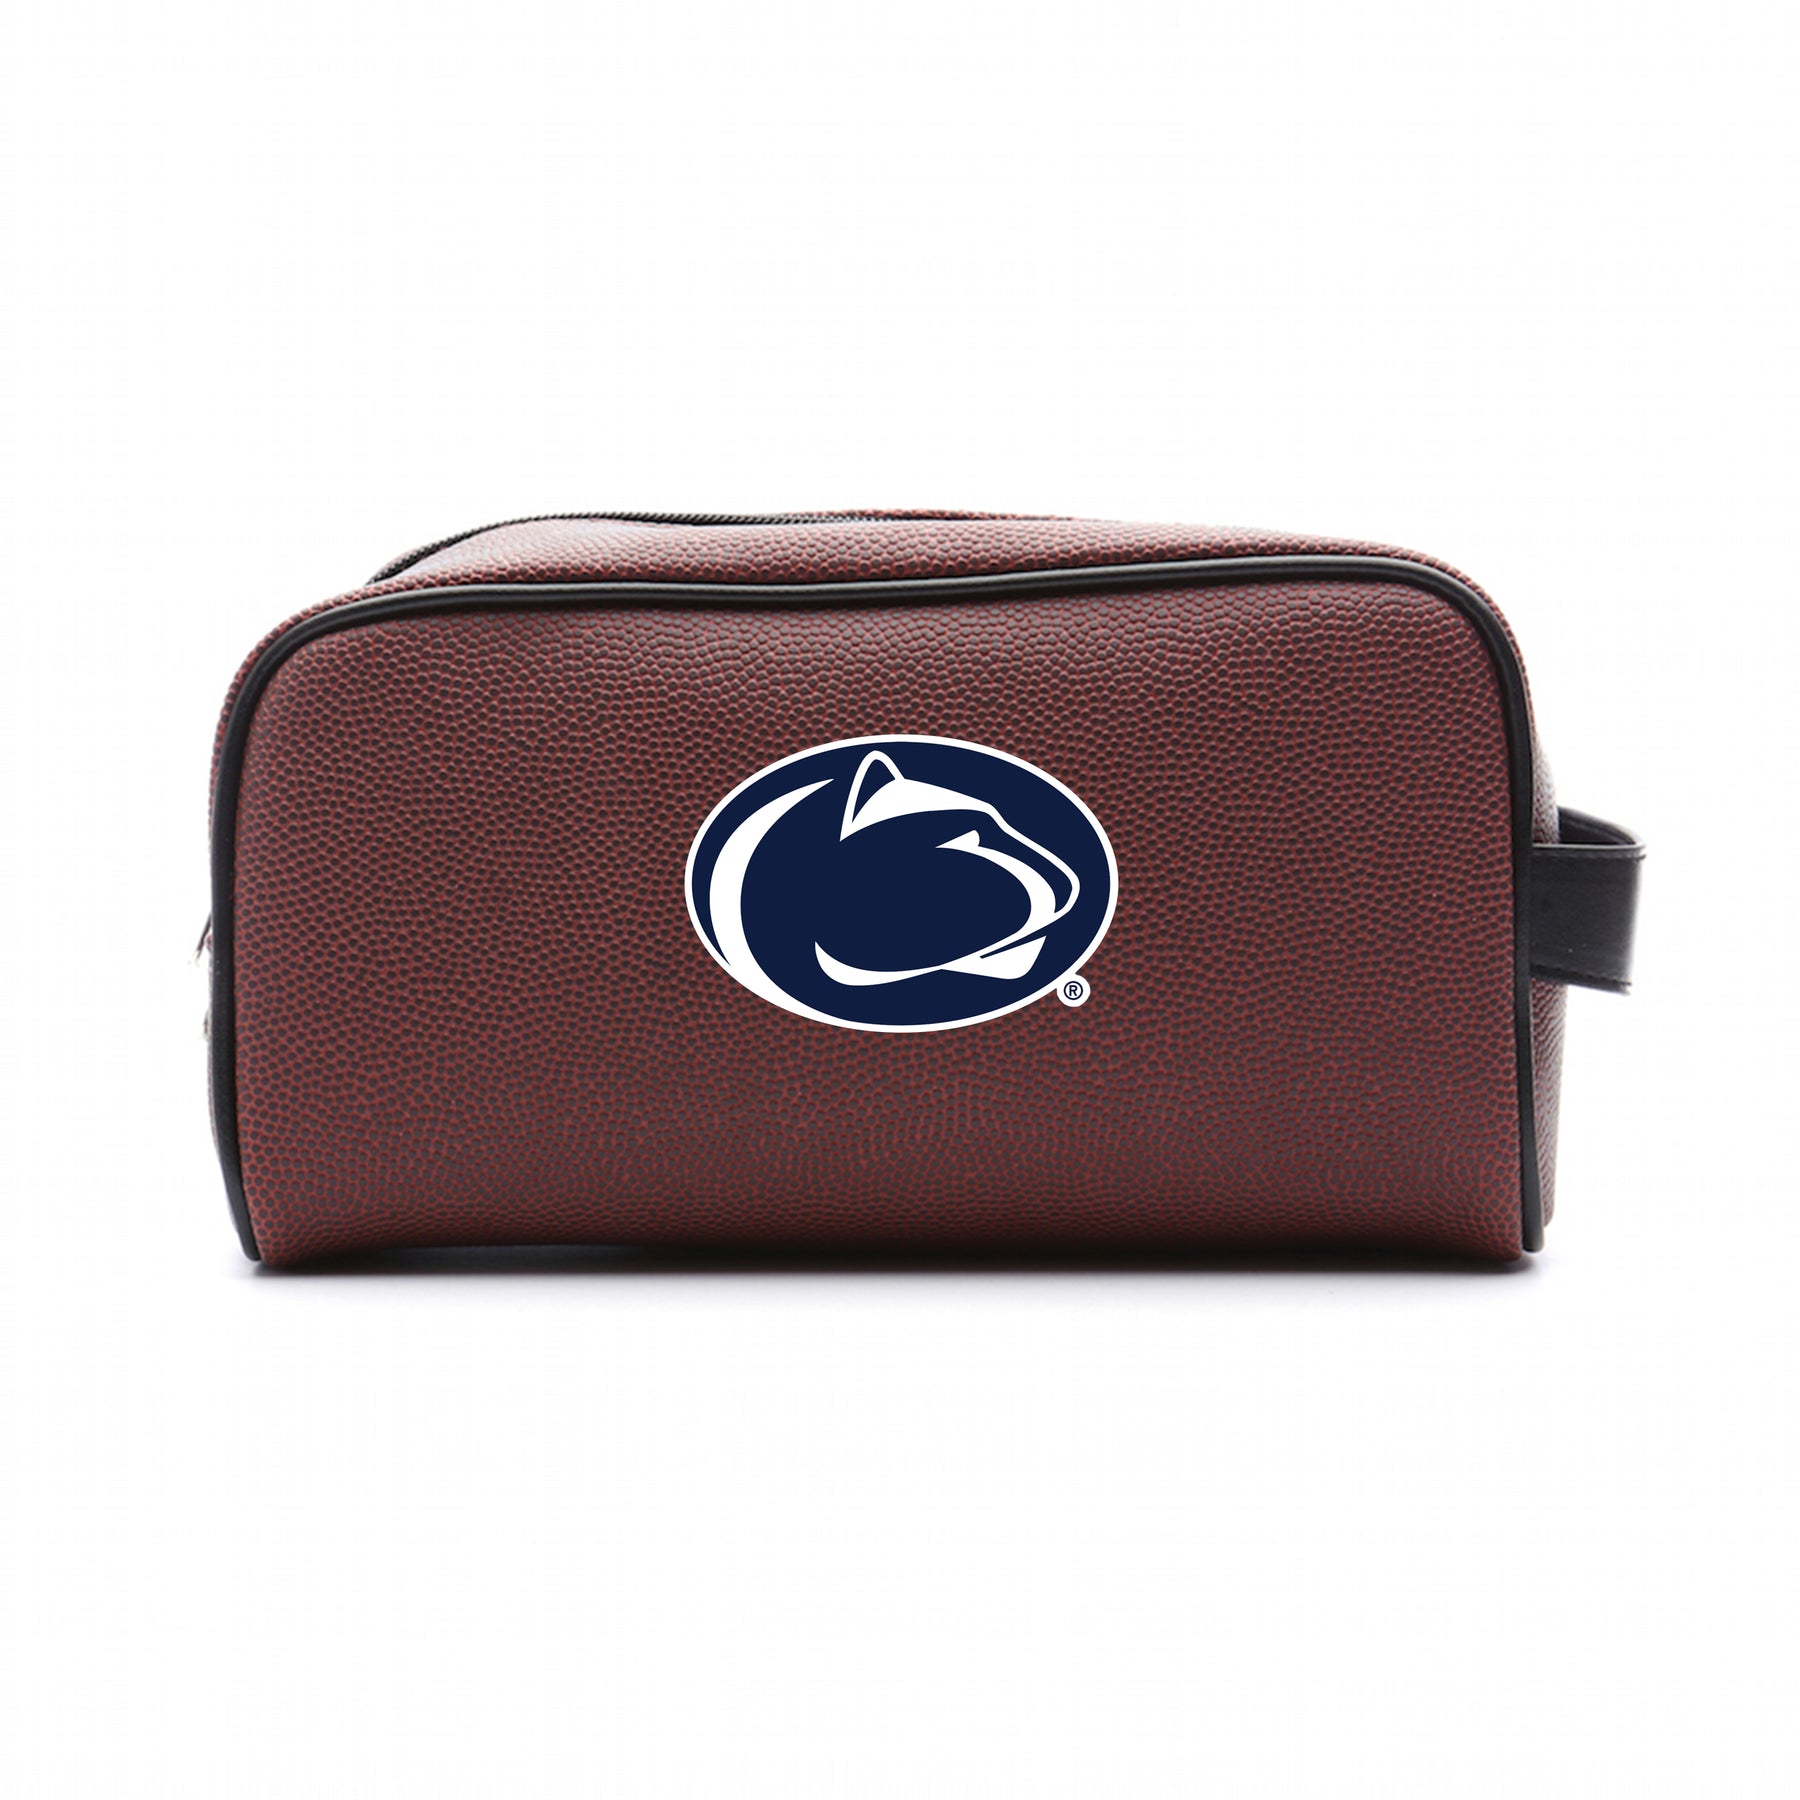 Penn State University Nittany Lions Football Toiletry Bag – Zumer